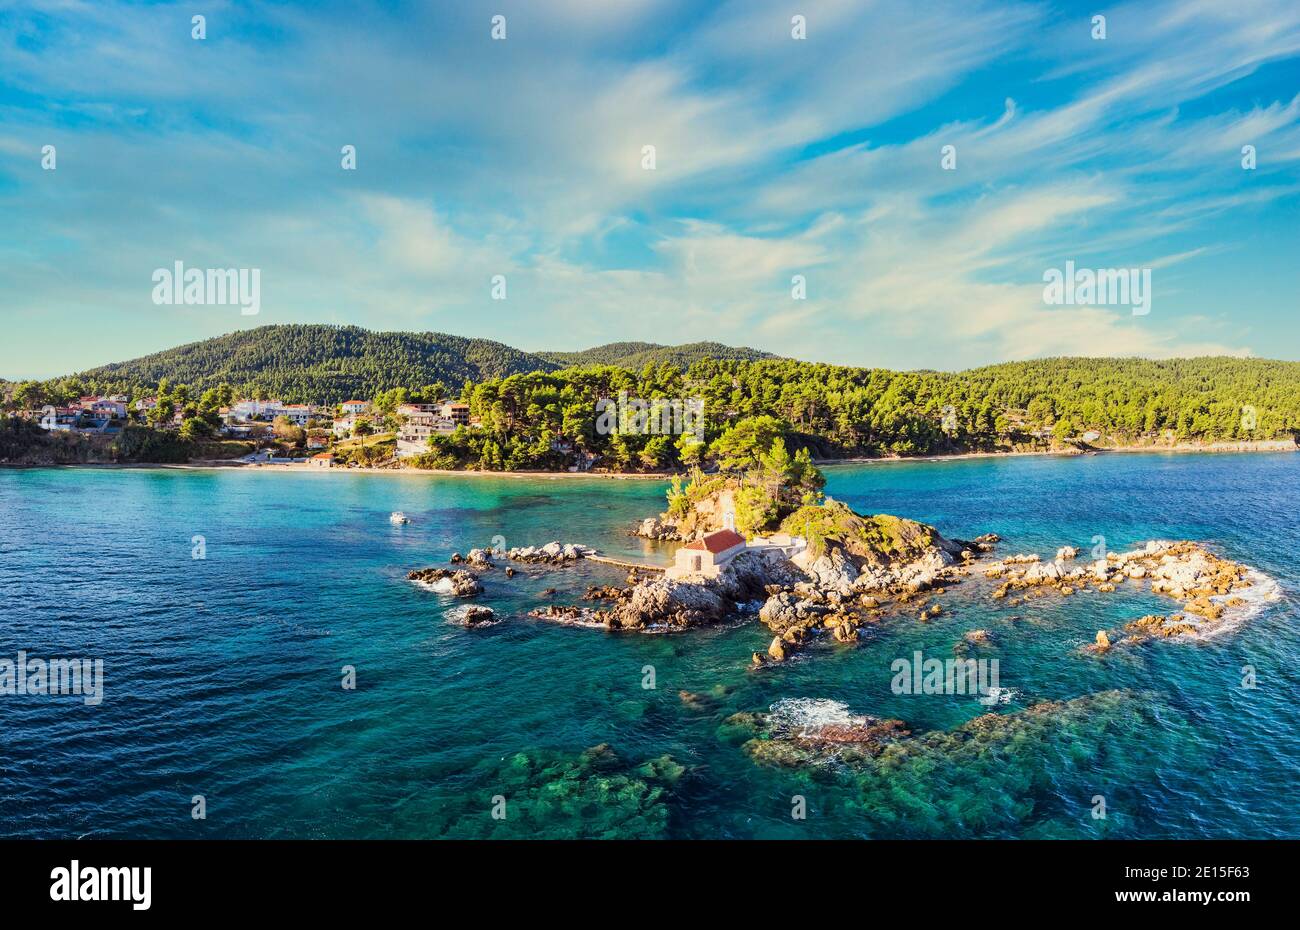 La plage d'Ellinika (Agios Nikolaos) sur l'île d'Evia, Grèce Photo Stock -  Alamy